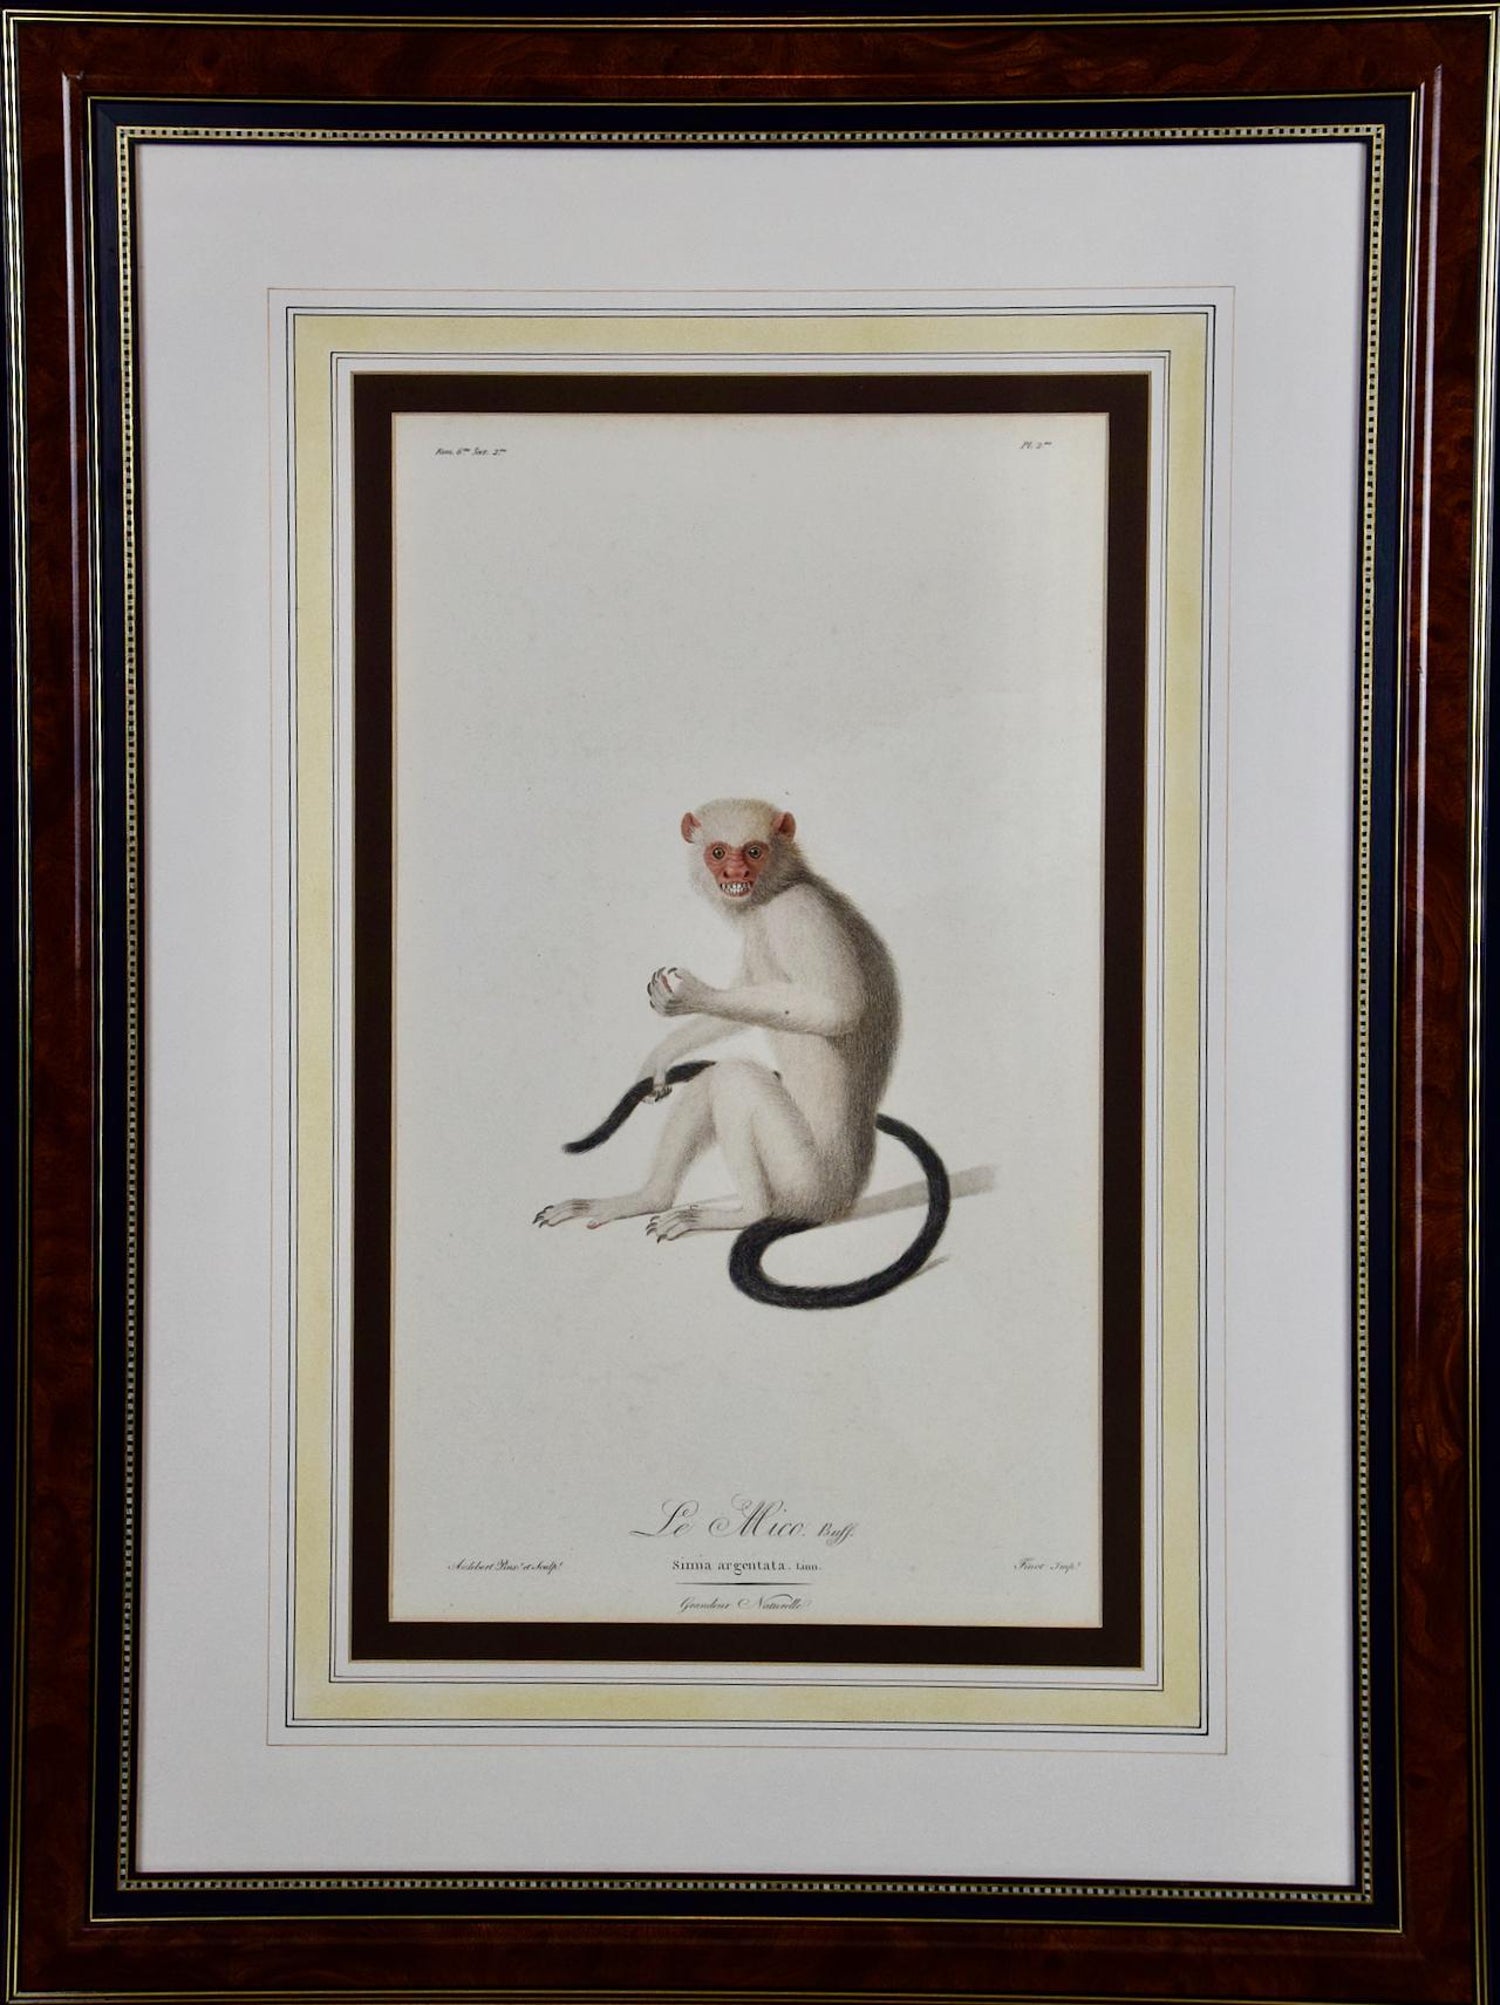 Jean Baptiste Auderbert - White-throated Capuchin Monkey: Framed Audebert  18th C. Hand-colored Engraving For Sale at 1stDibs